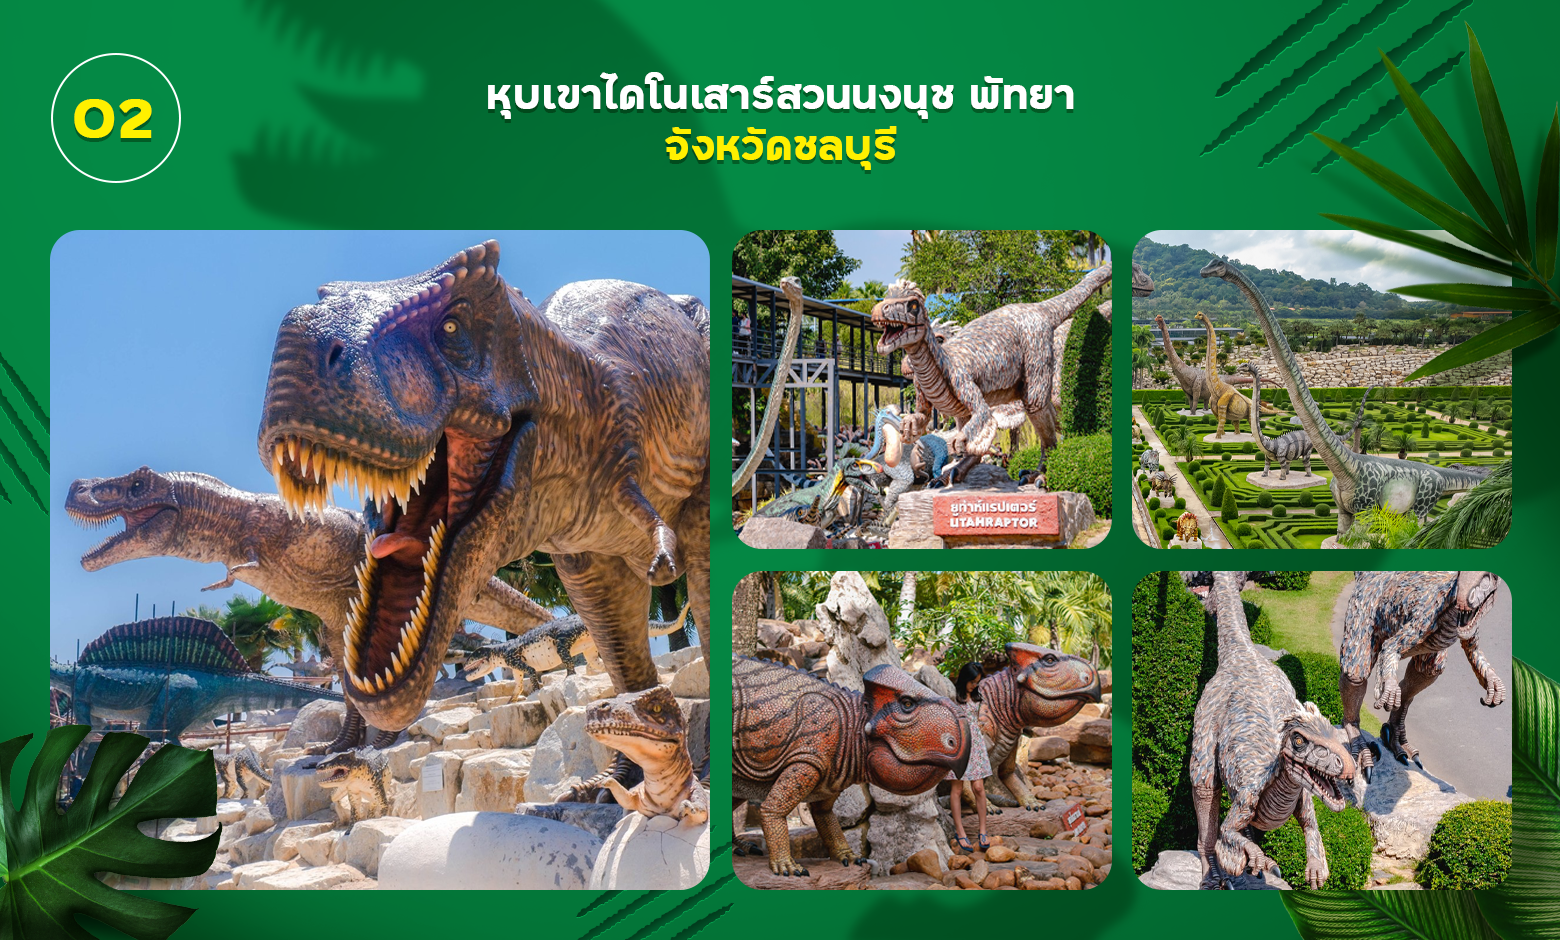 หุบเขาและพิพิธภัณฑ์ไดโนเสาร์ สวนนงนุช พัทยา จังหวัดชลบุรี